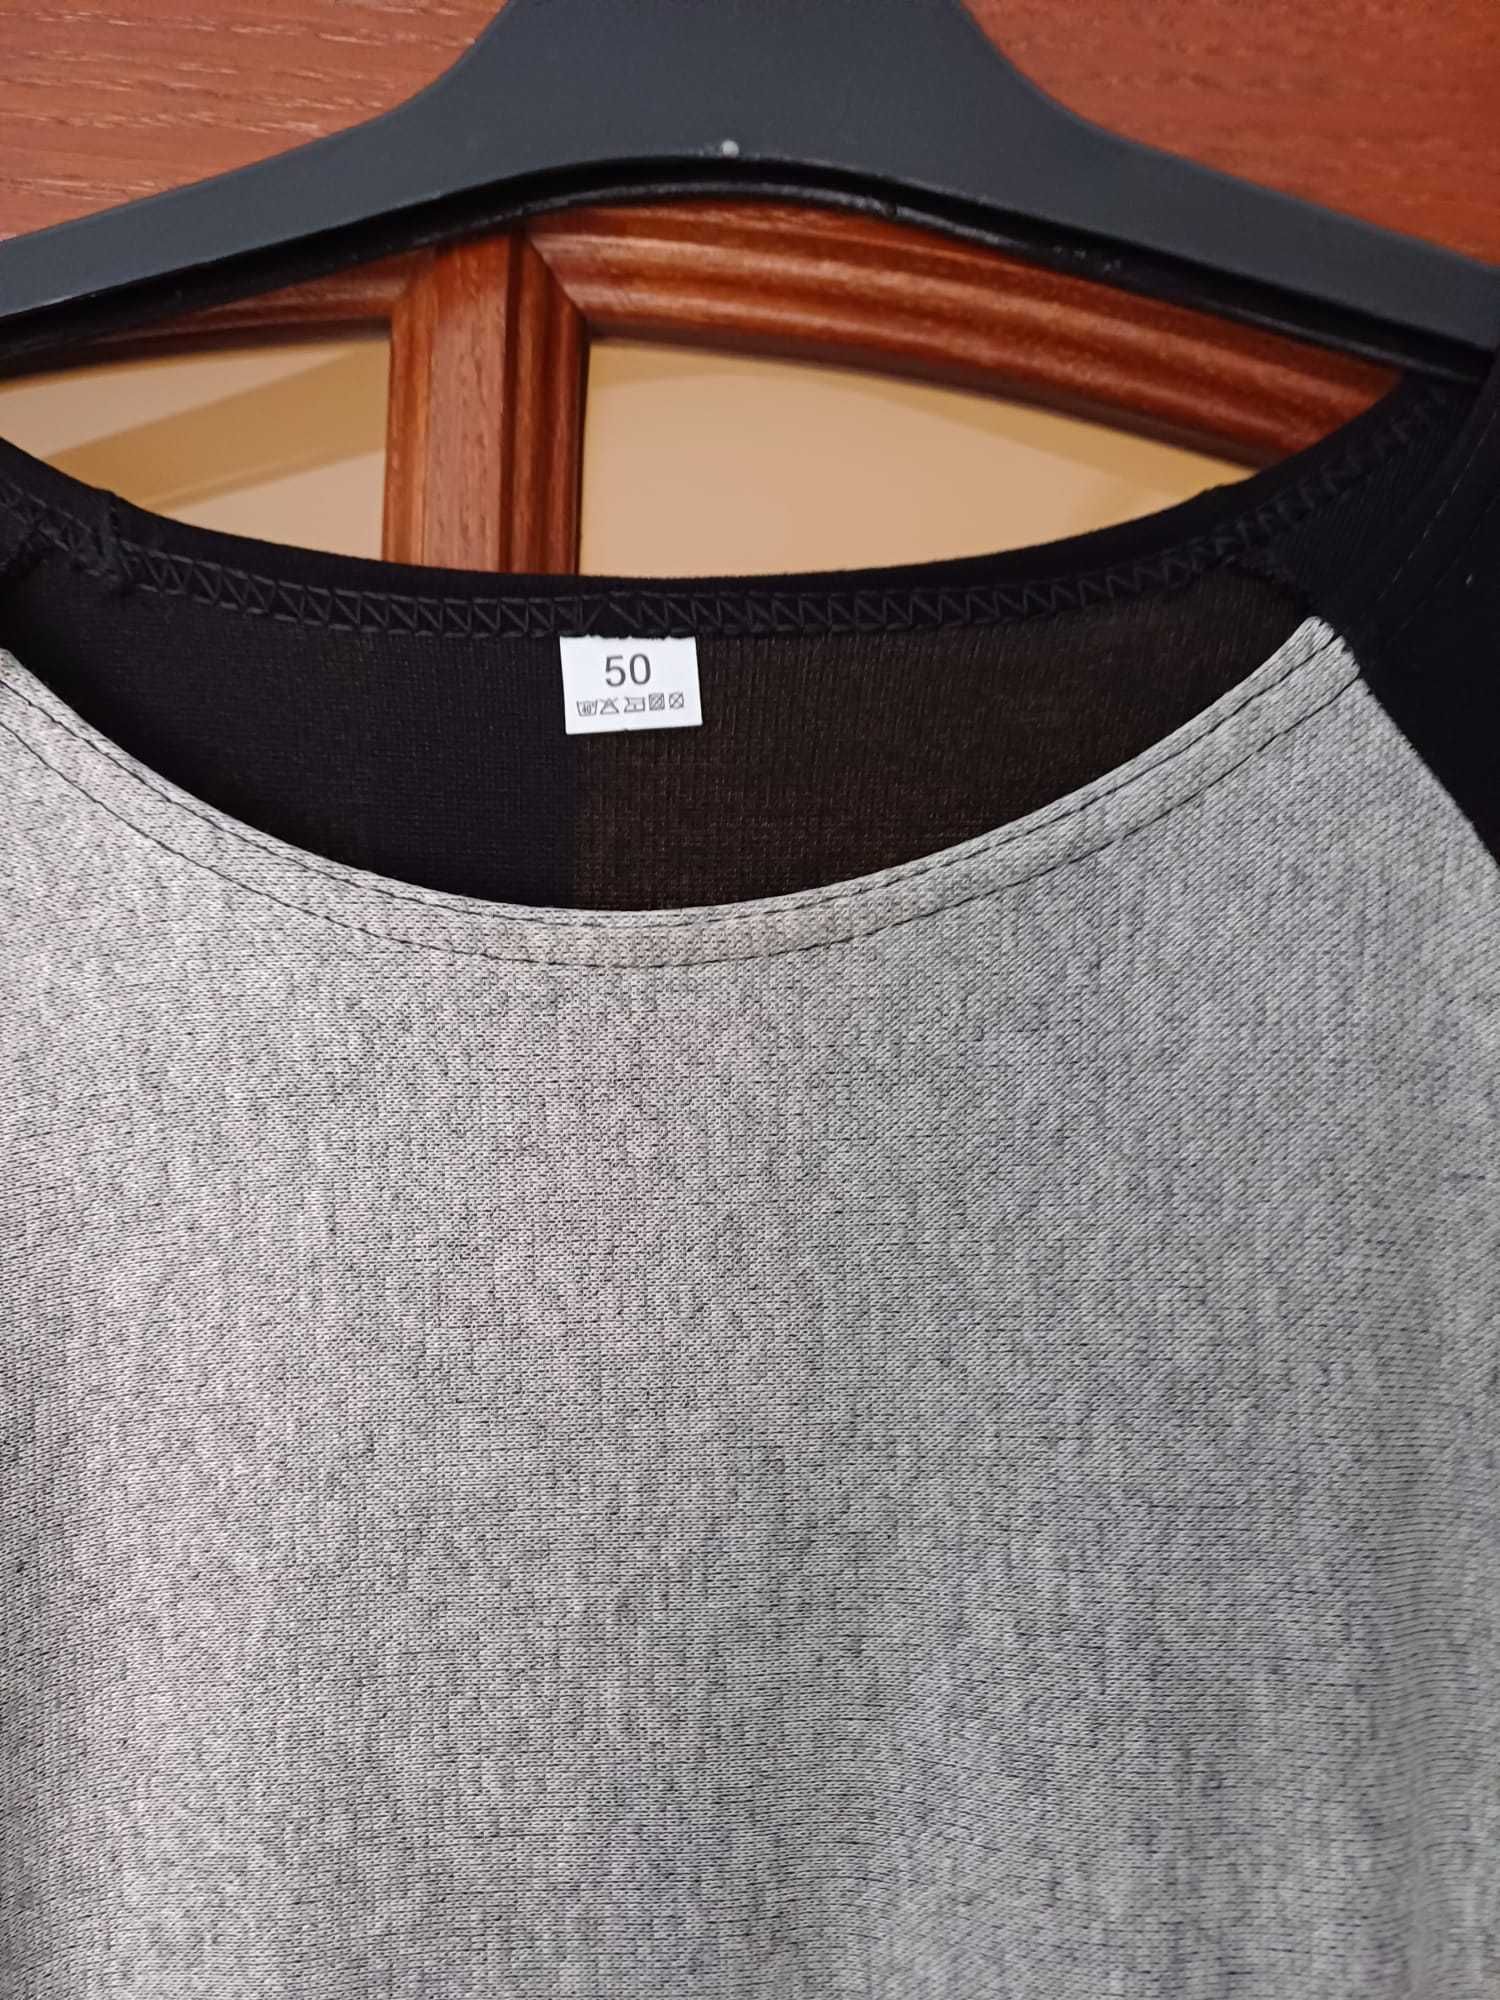 Tunika bluzka z kieszeniami szaro-czarna XL 50